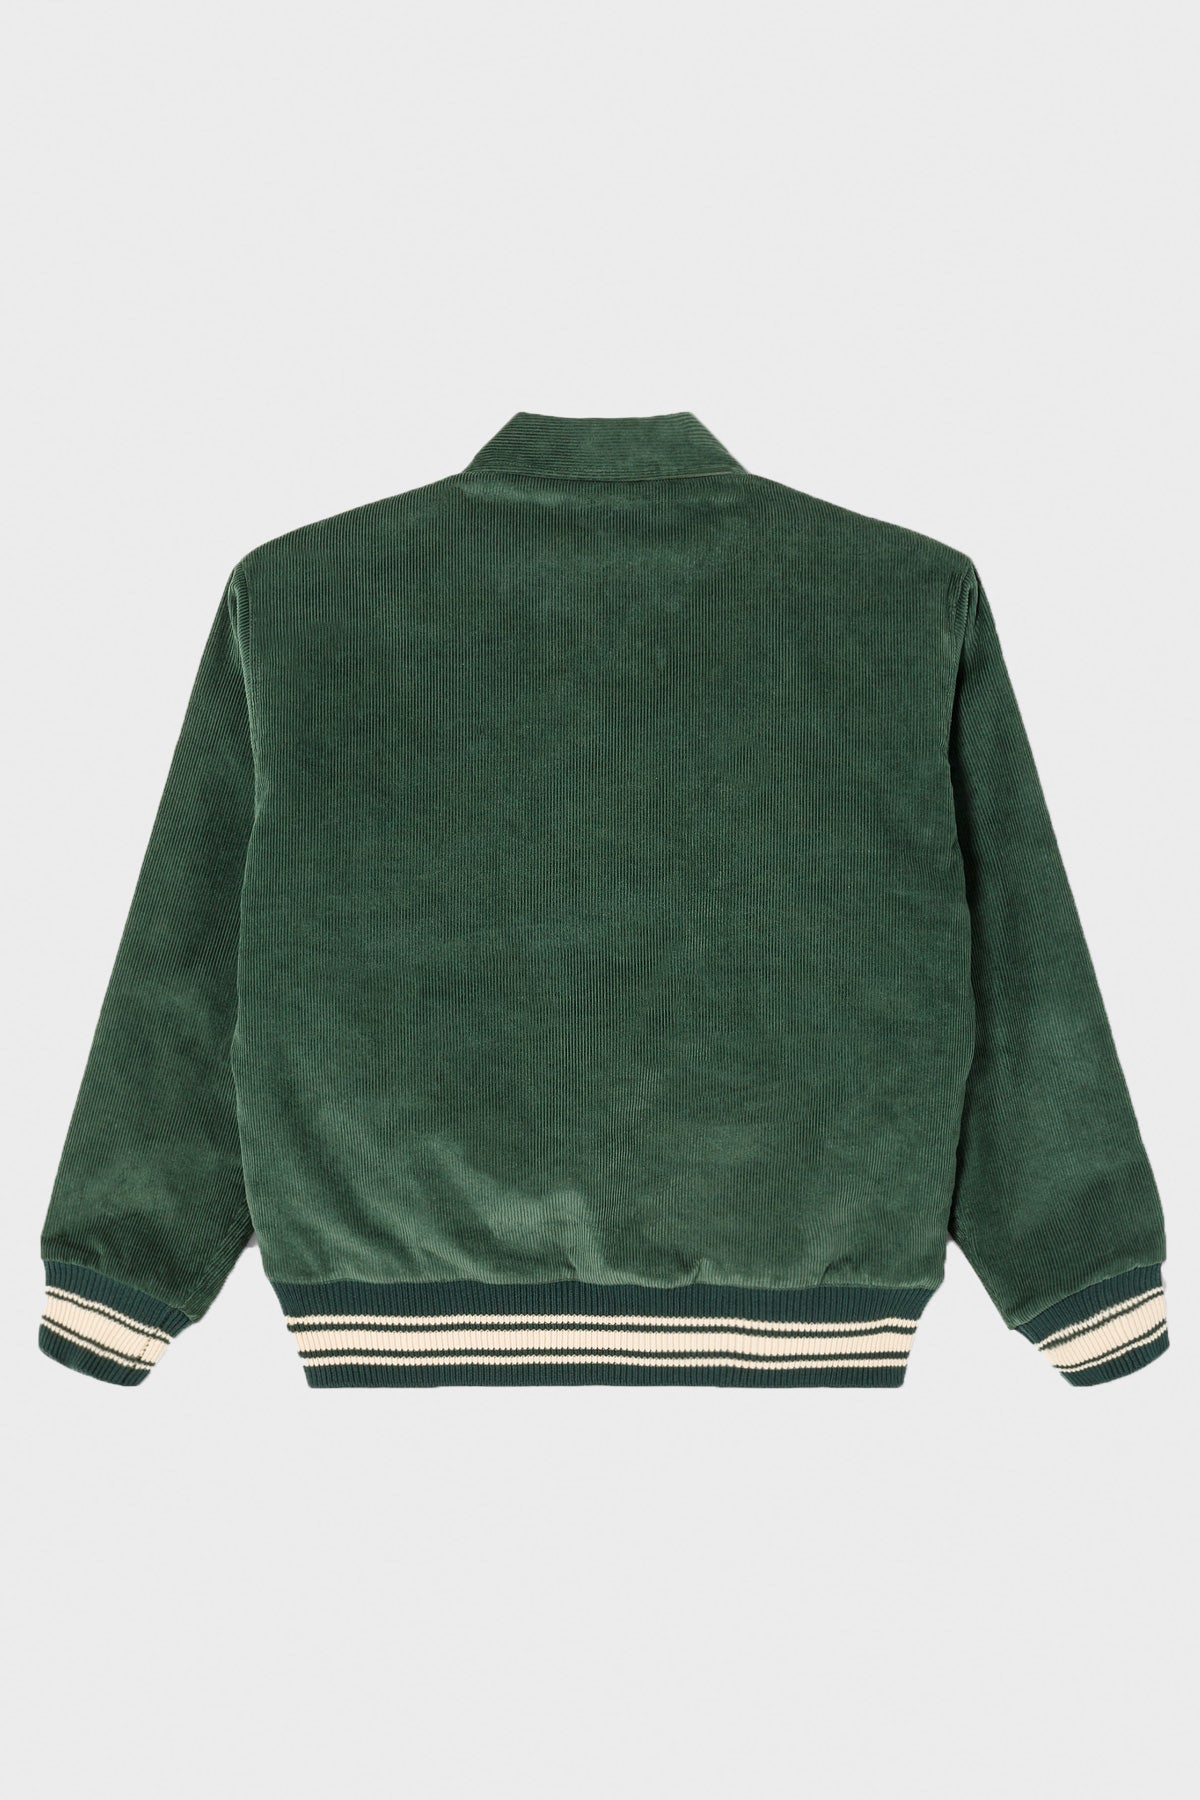 Green and White Varsity Jacket - William Jacket